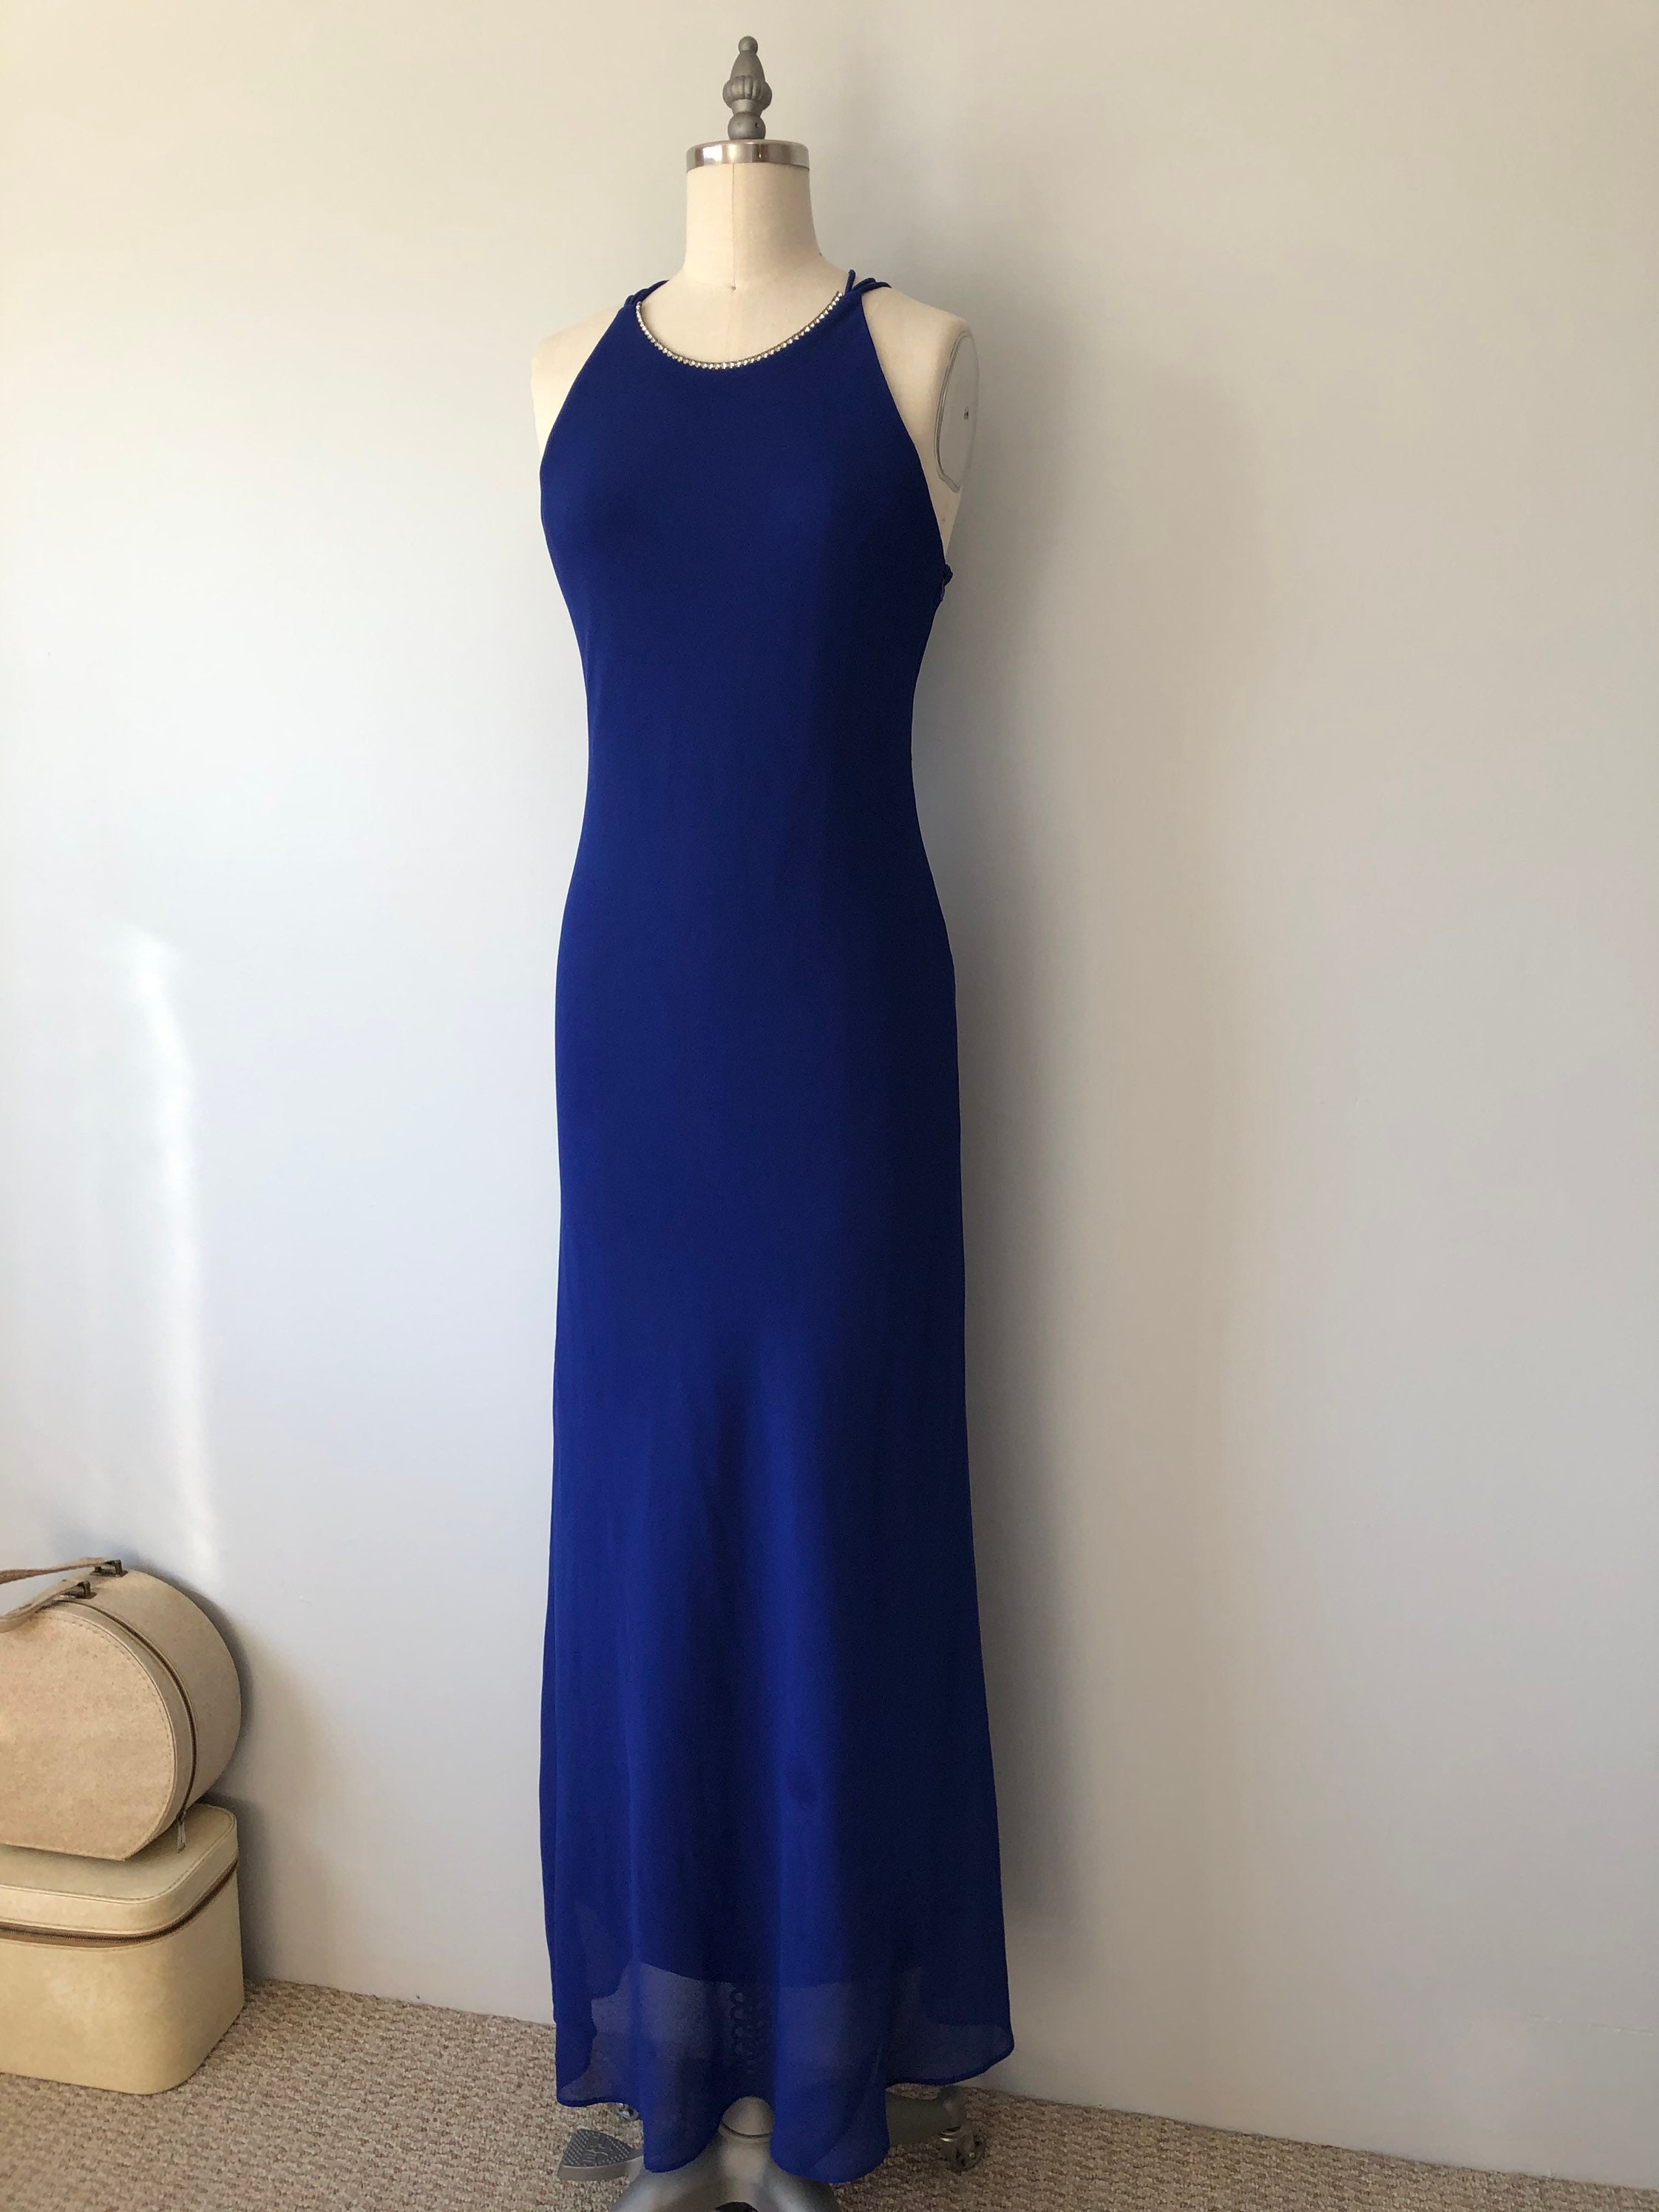 Vibrant Blue Evening Gown / Long Vintage 80s Dress / Diamond Detailing ...